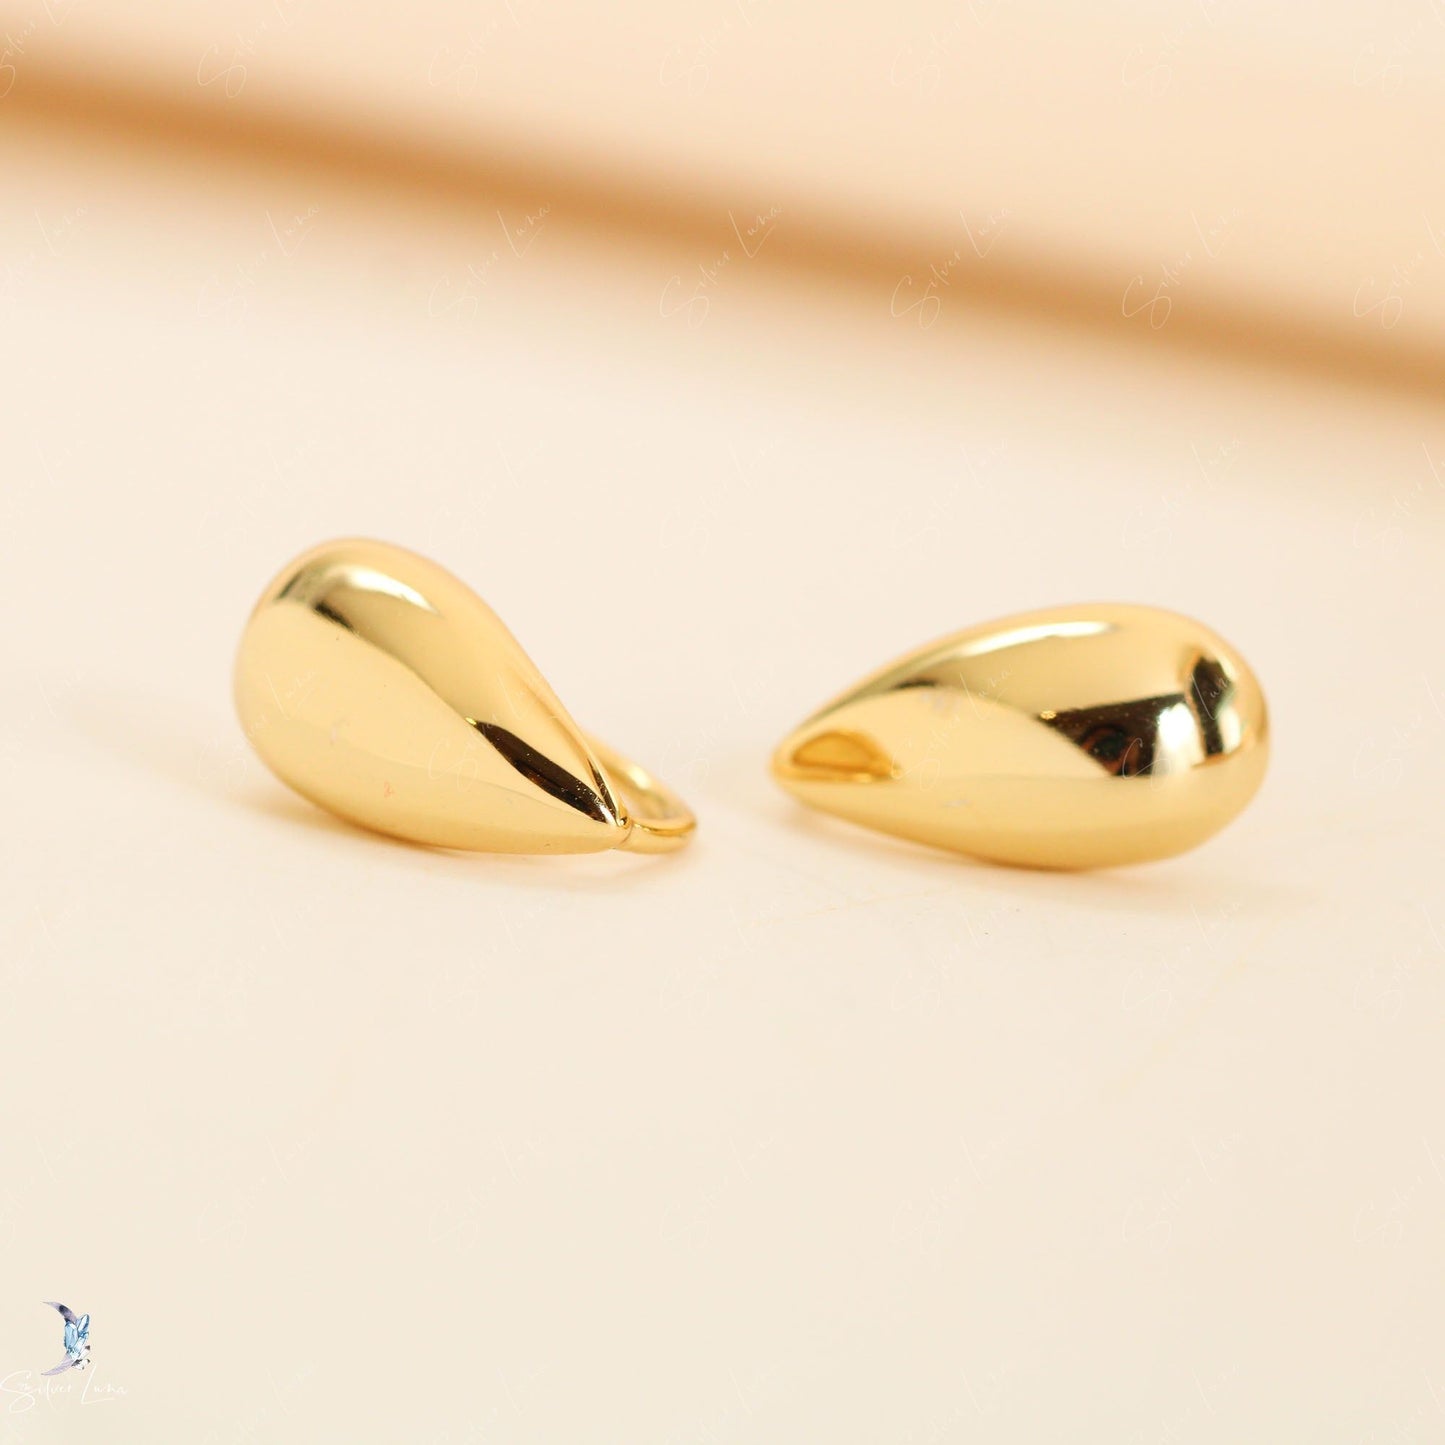 Golden teardrop silver stud earrings